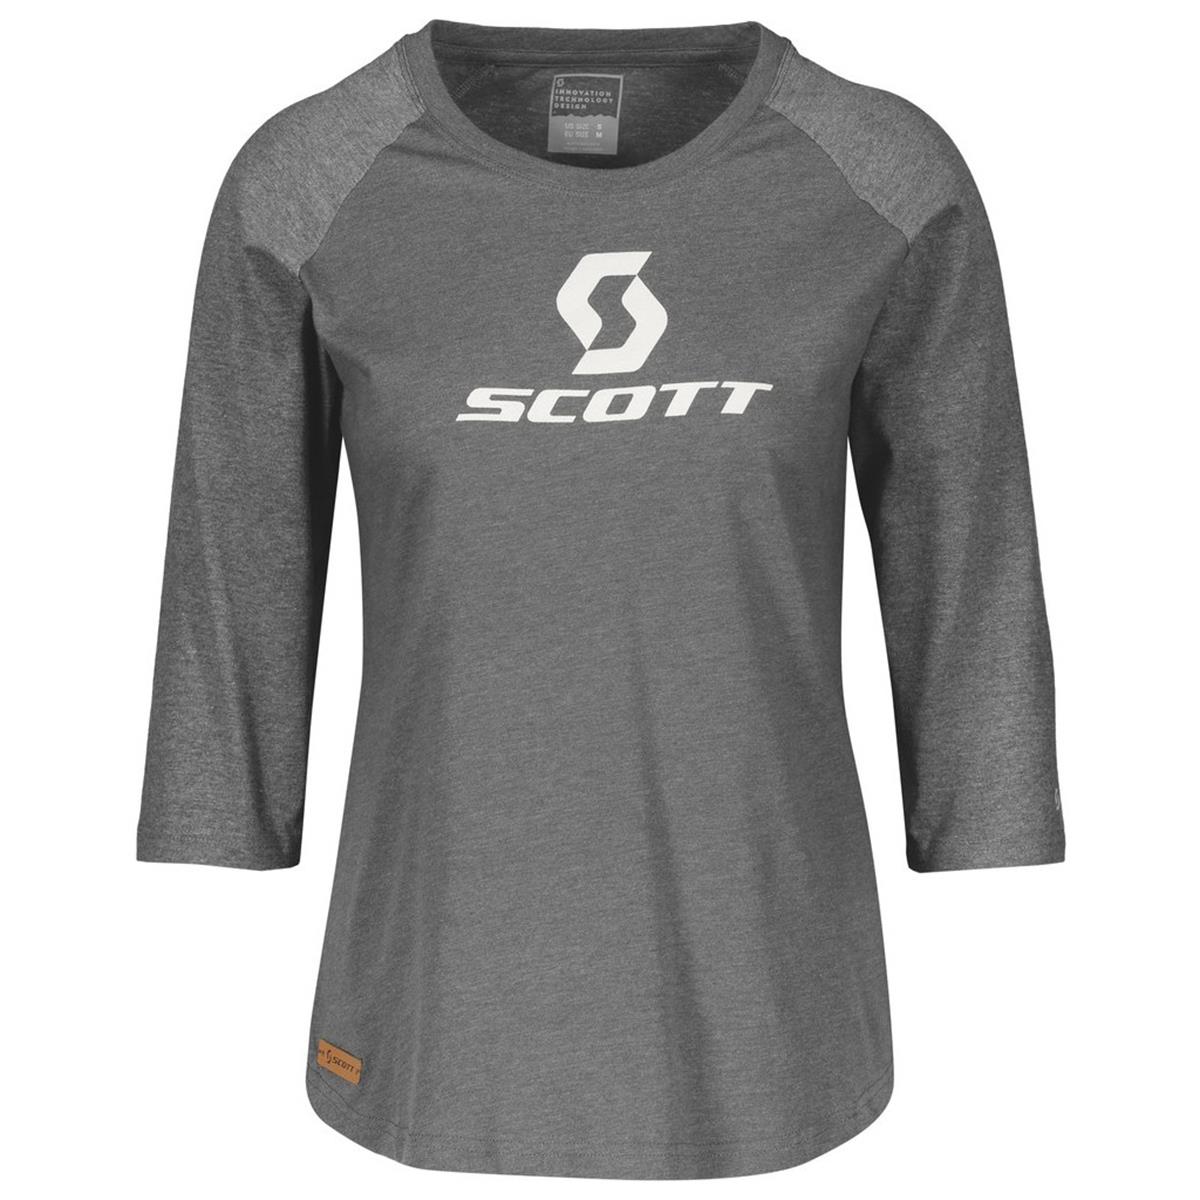 Scott Donna T-Shirt Raglan Manica 3/4 10 Icon Raglan Grigio Scuro Melange/Grigio Heather